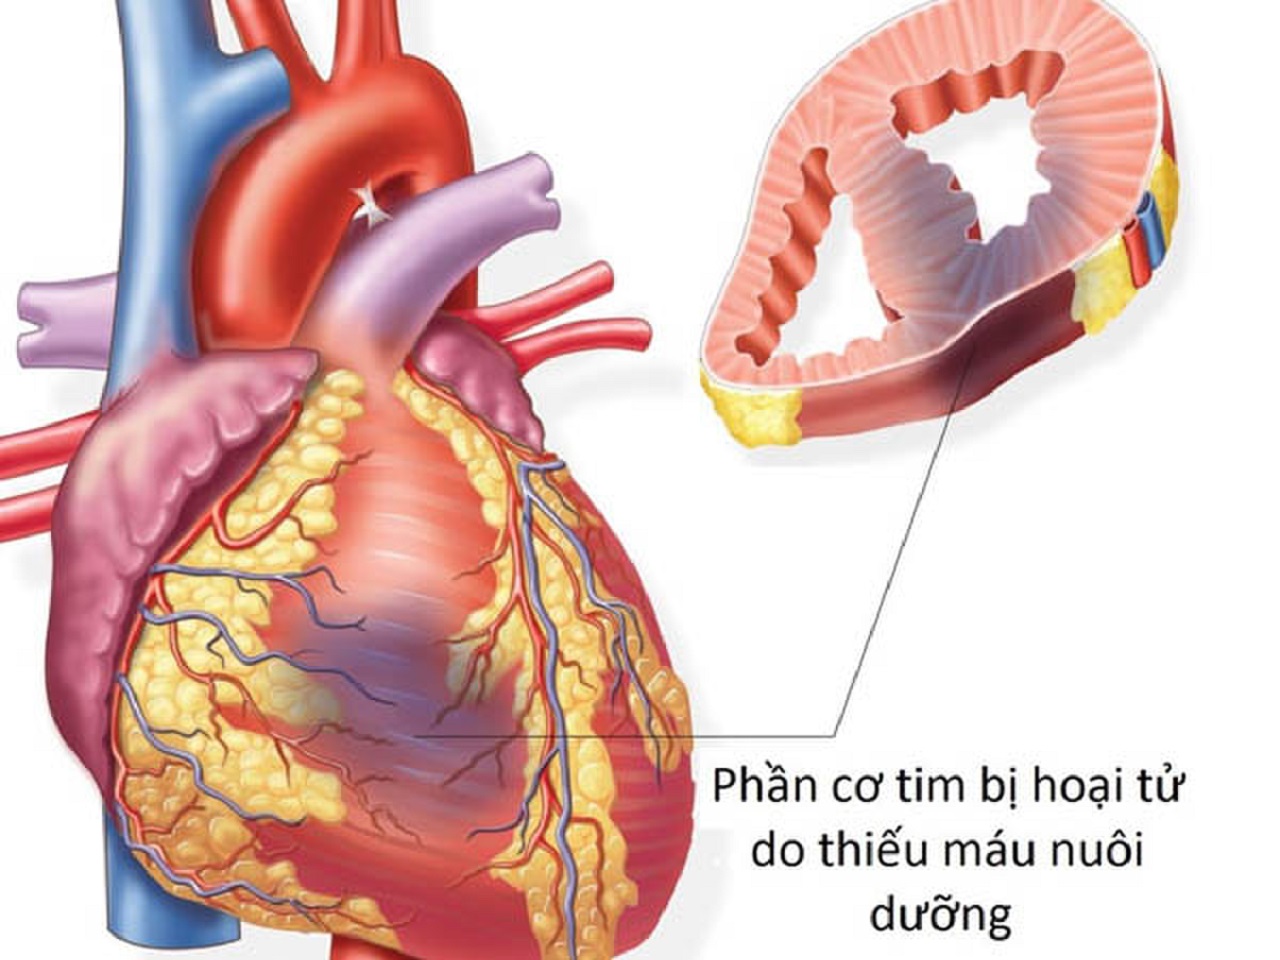 Nhồi máu cơ tim thành dưới có phải là một dạng bệnh nhồi máu cơ tim thường gặp?